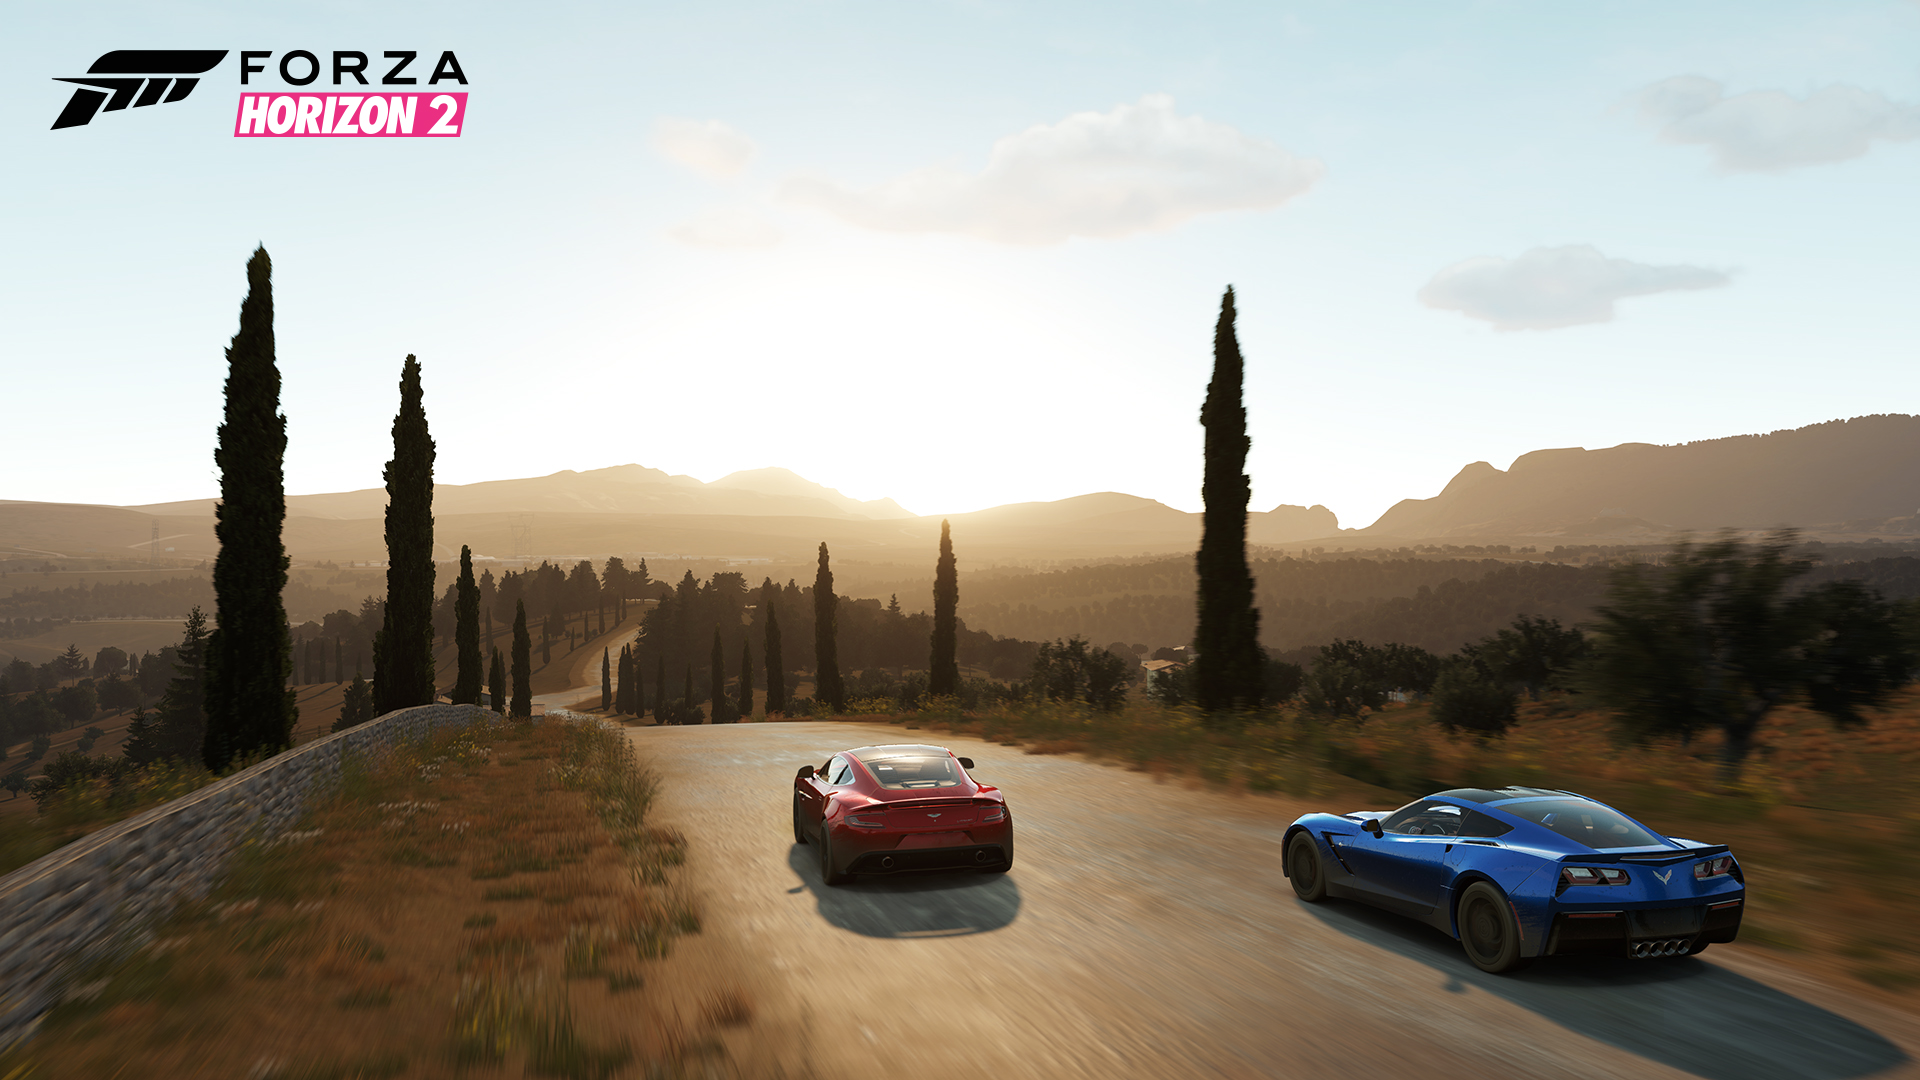 Real Life VS Forza Horizon 2 - Photography - Official Forza